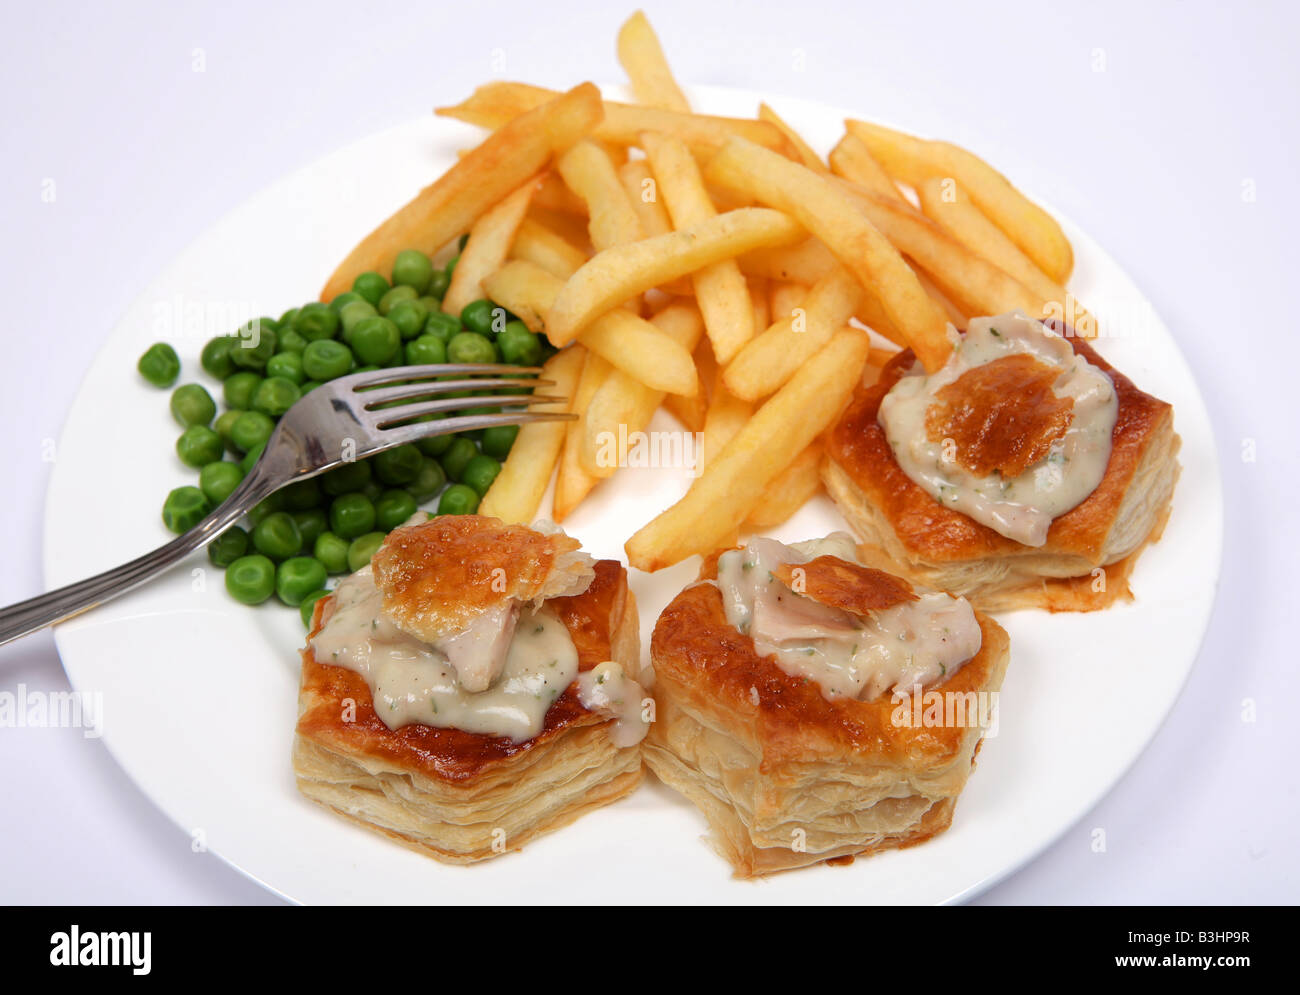 Eine köstliche Mahlzeit Türkei Sauce Vol au Vents serviert mit Erbsen gefüllt und französische gebratene Kartoffelchips Stockfoto